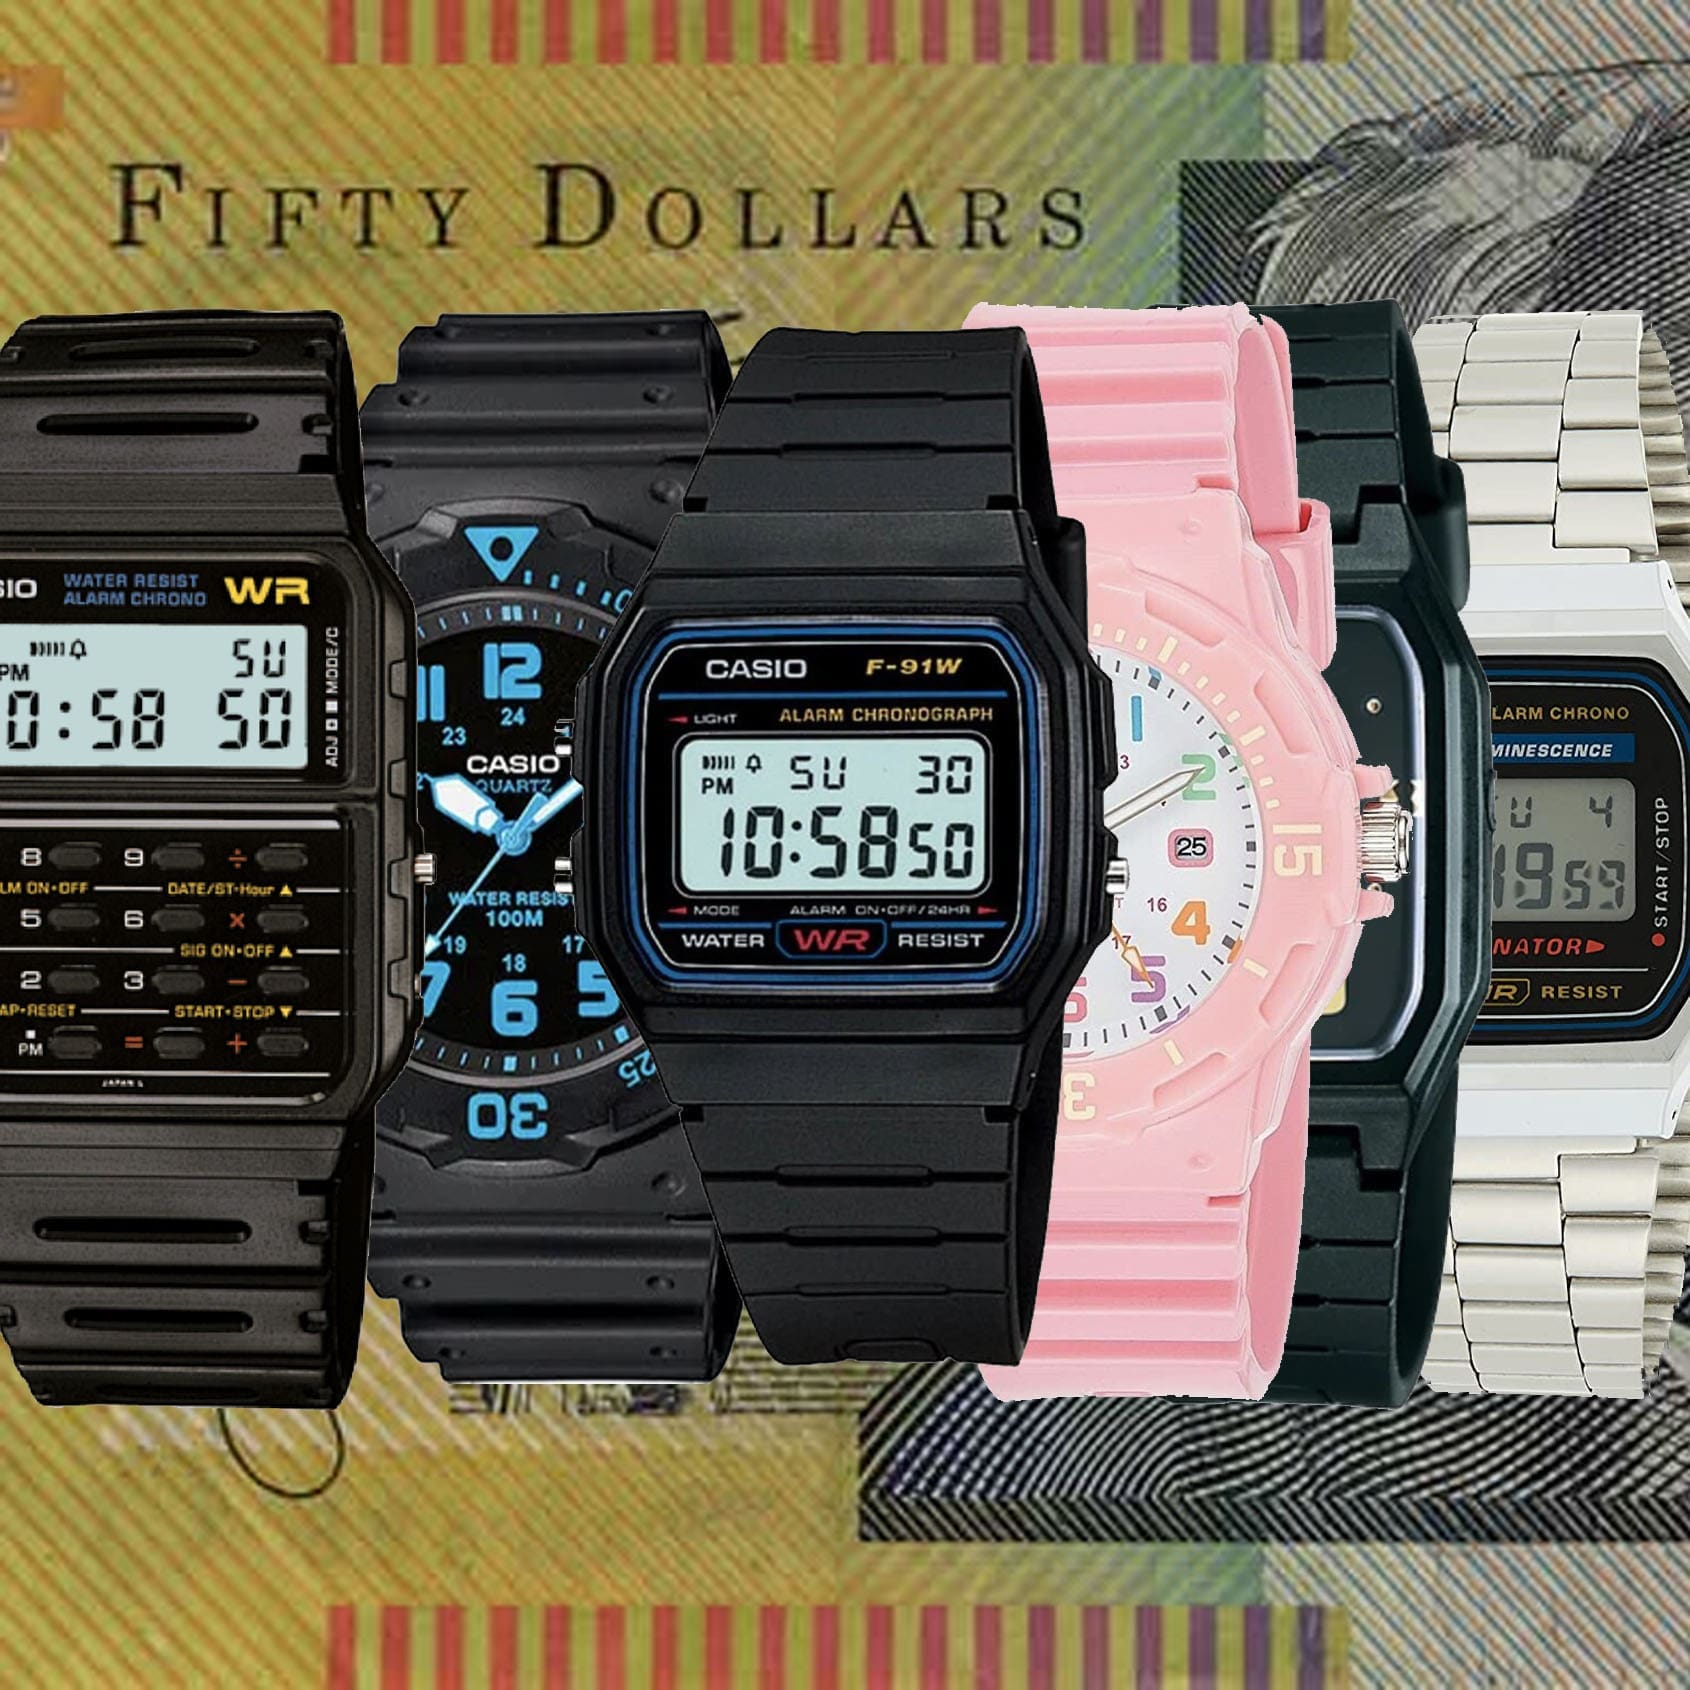 The 5 best Casio watches under $50